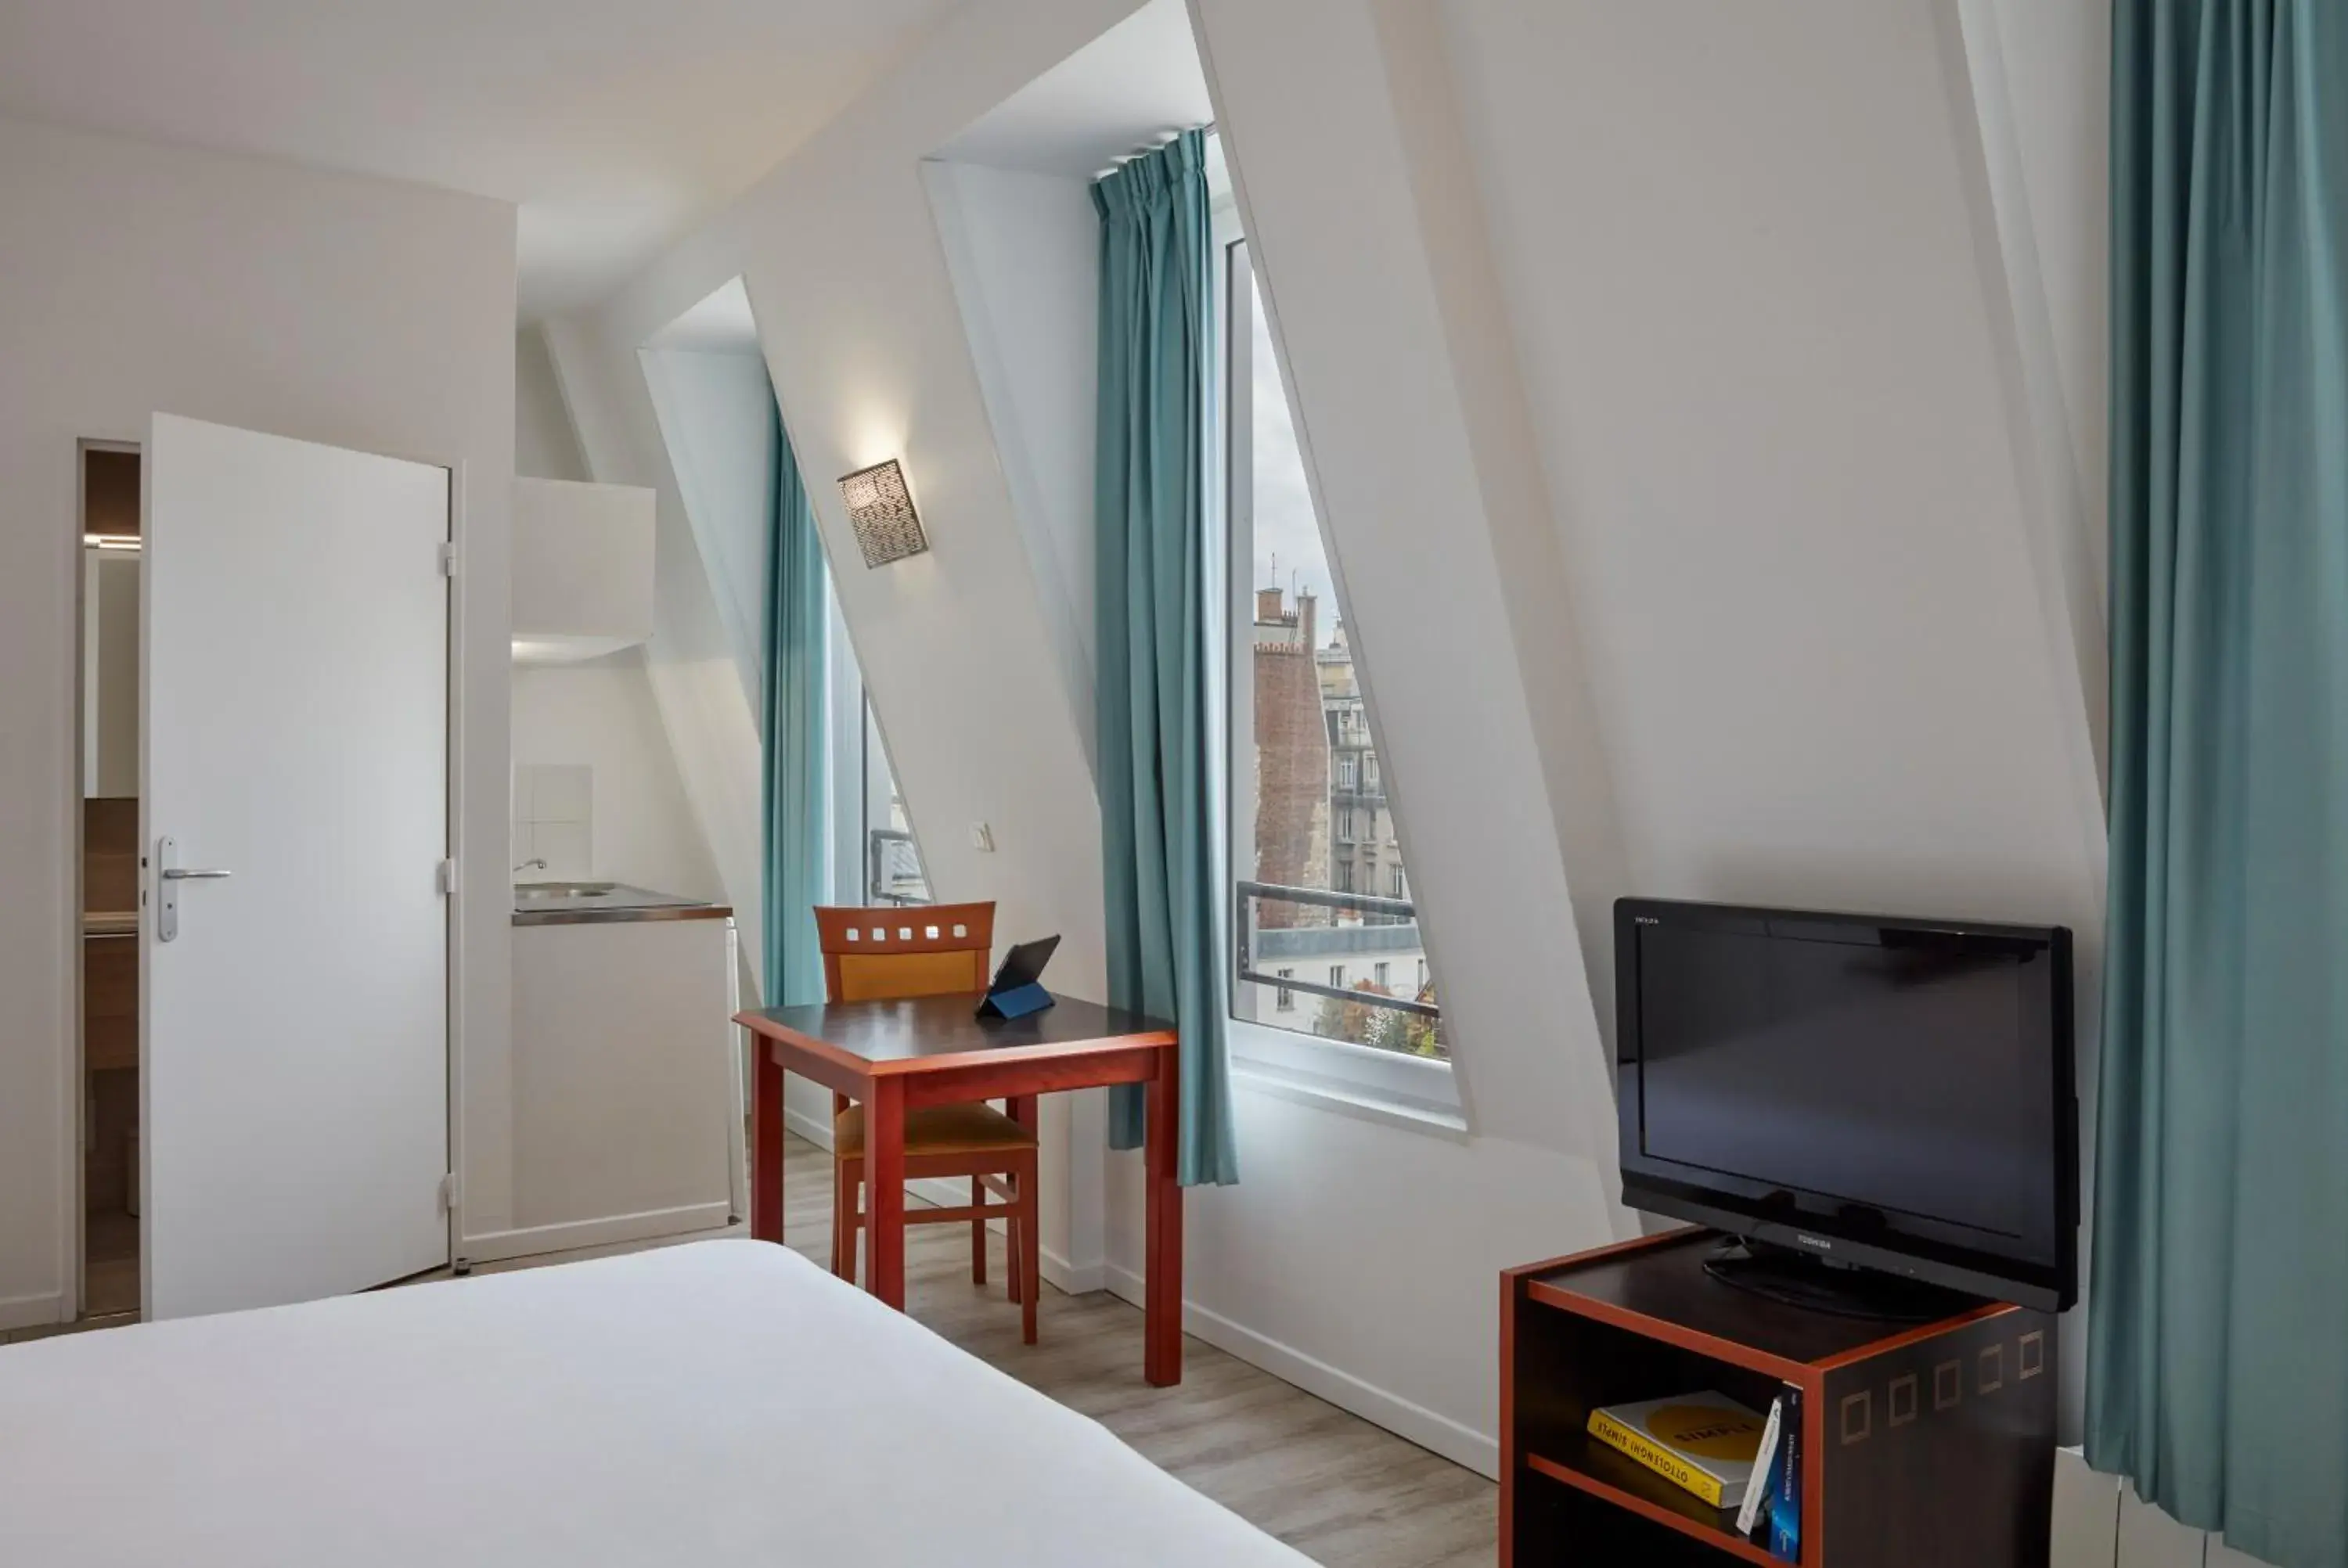 Bedroom, TV/Entertainment Center in Aparthotel Adagio Access Paris Philippe Auguste